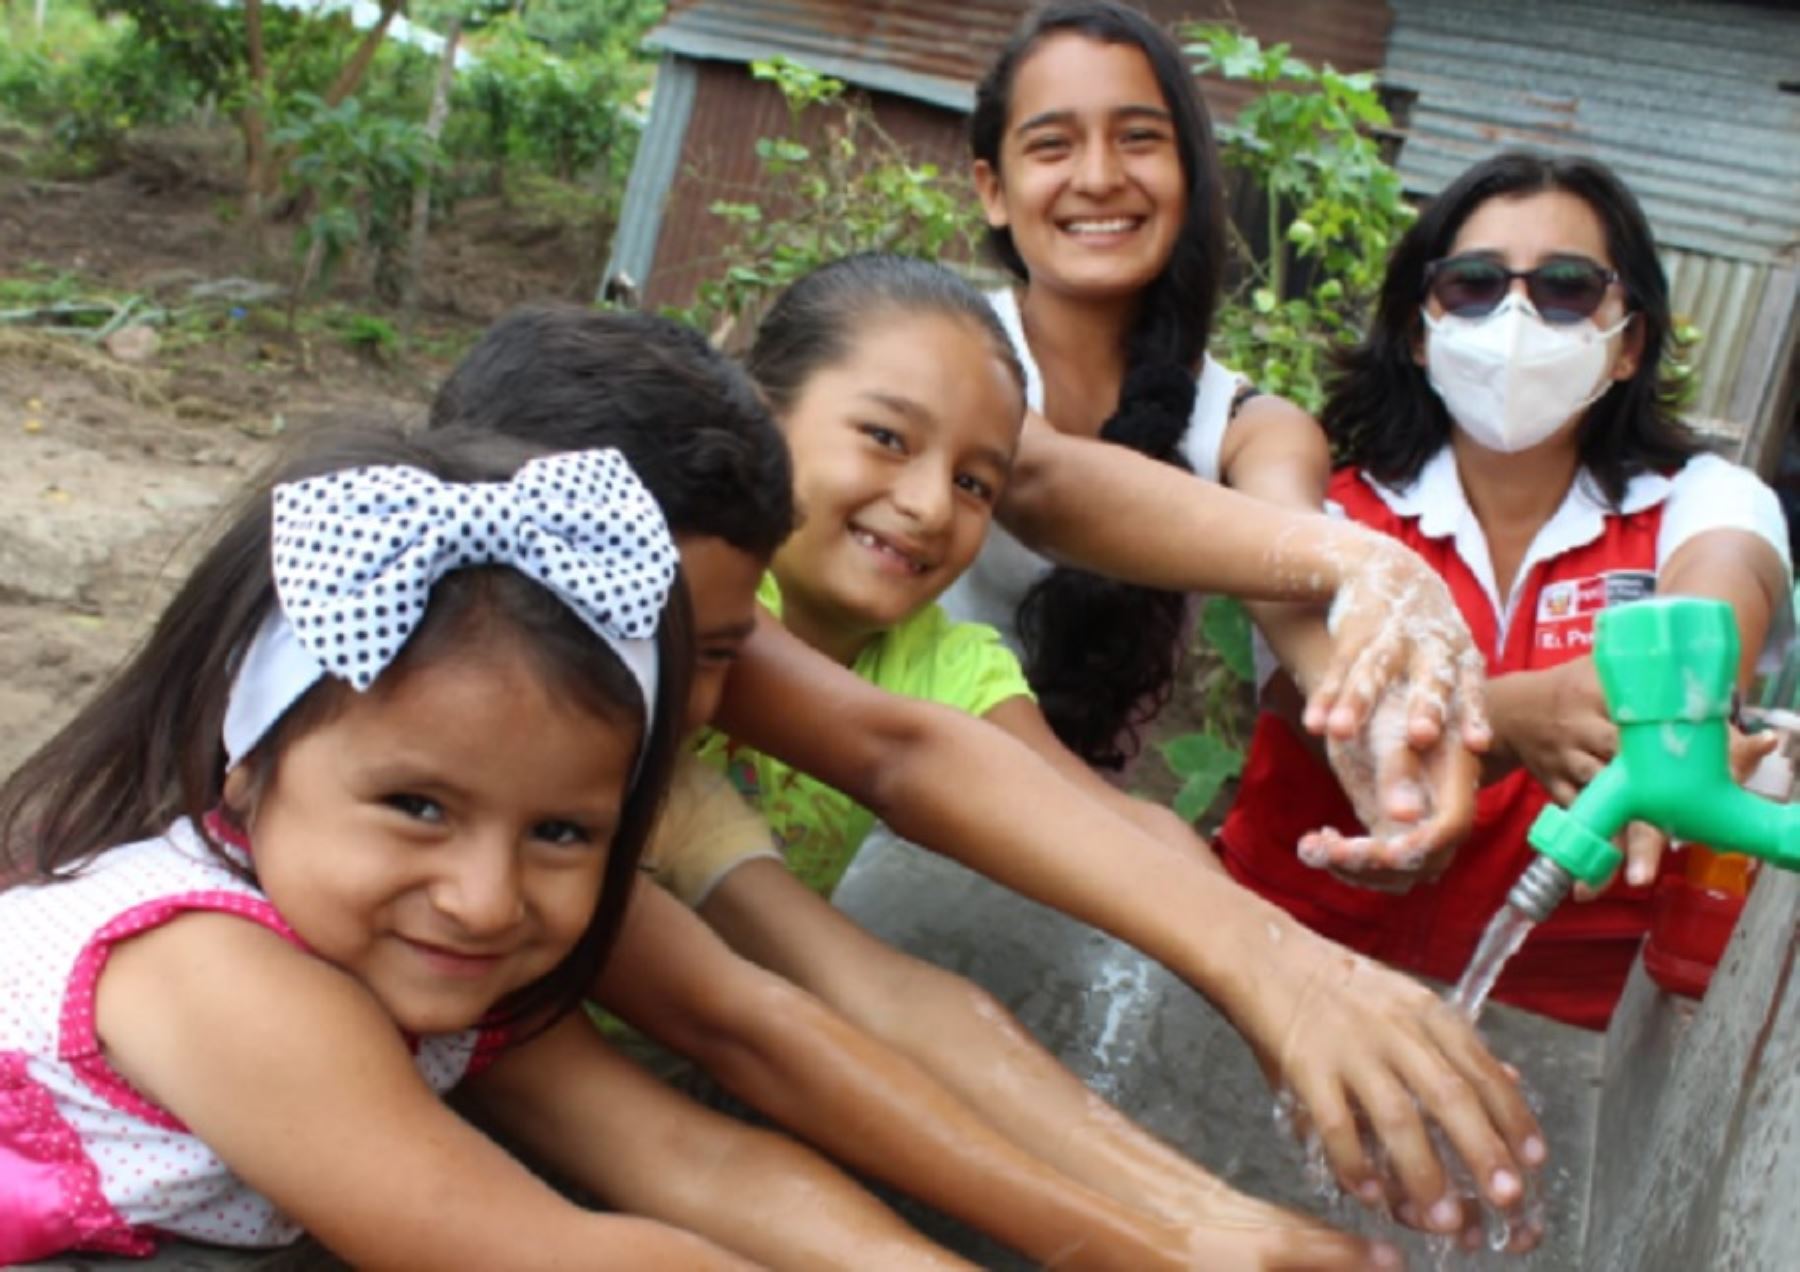 Proyecto de agua potable del Ministerio de Vivienda redujo infecciones en población infantil del centro poblado Santa Catalina, en la provincia de Moyobamba de la región San Martín.